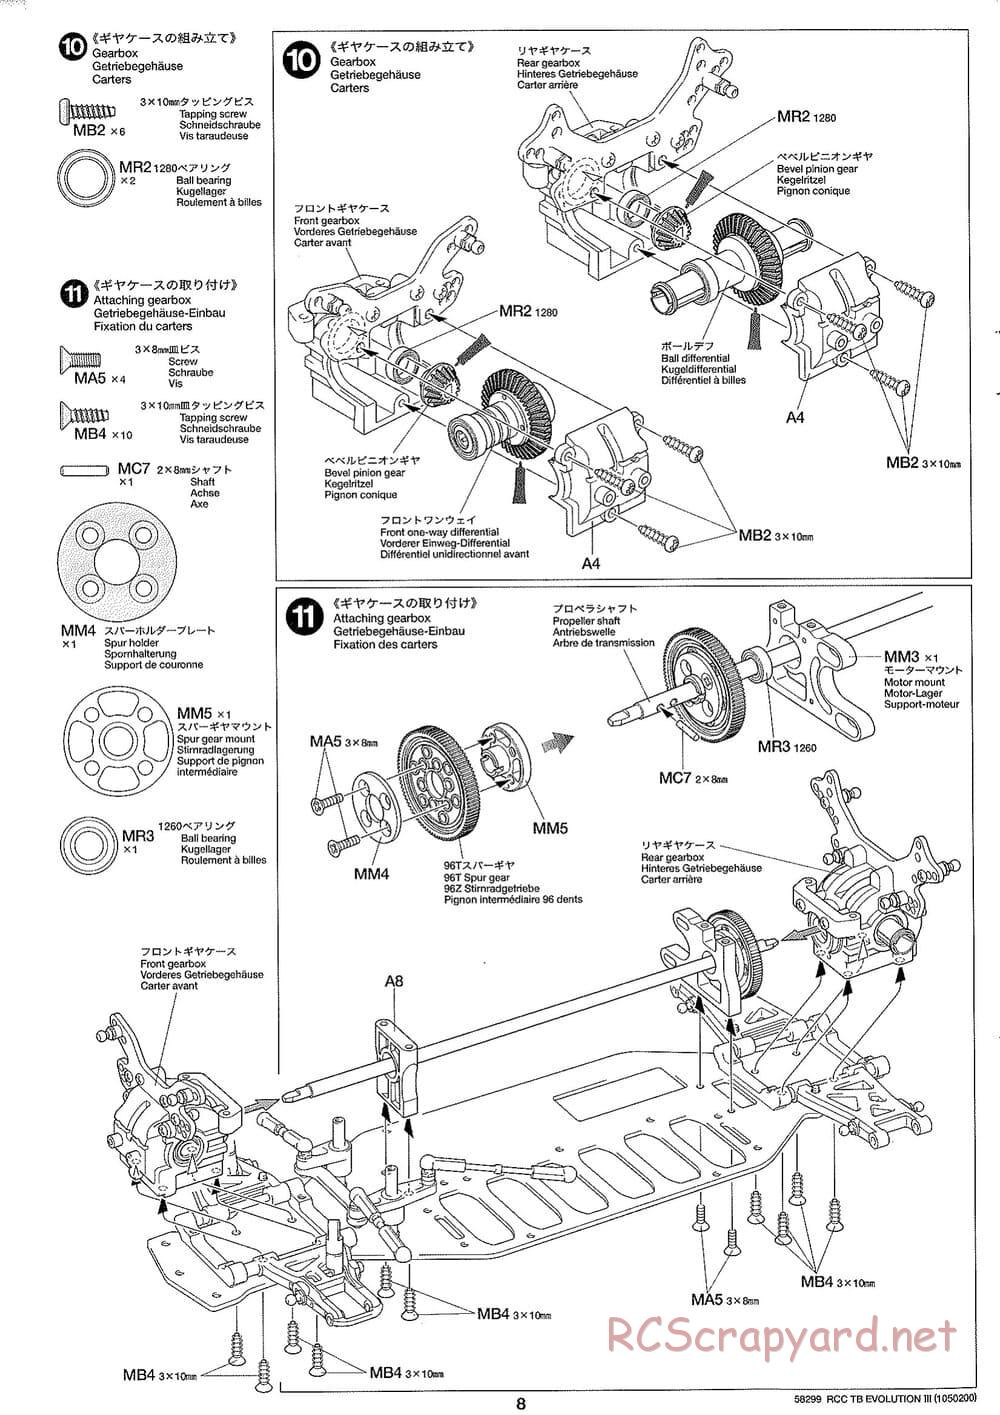 Tamiya - TB Evolution III Chassis - Manual - Page 9